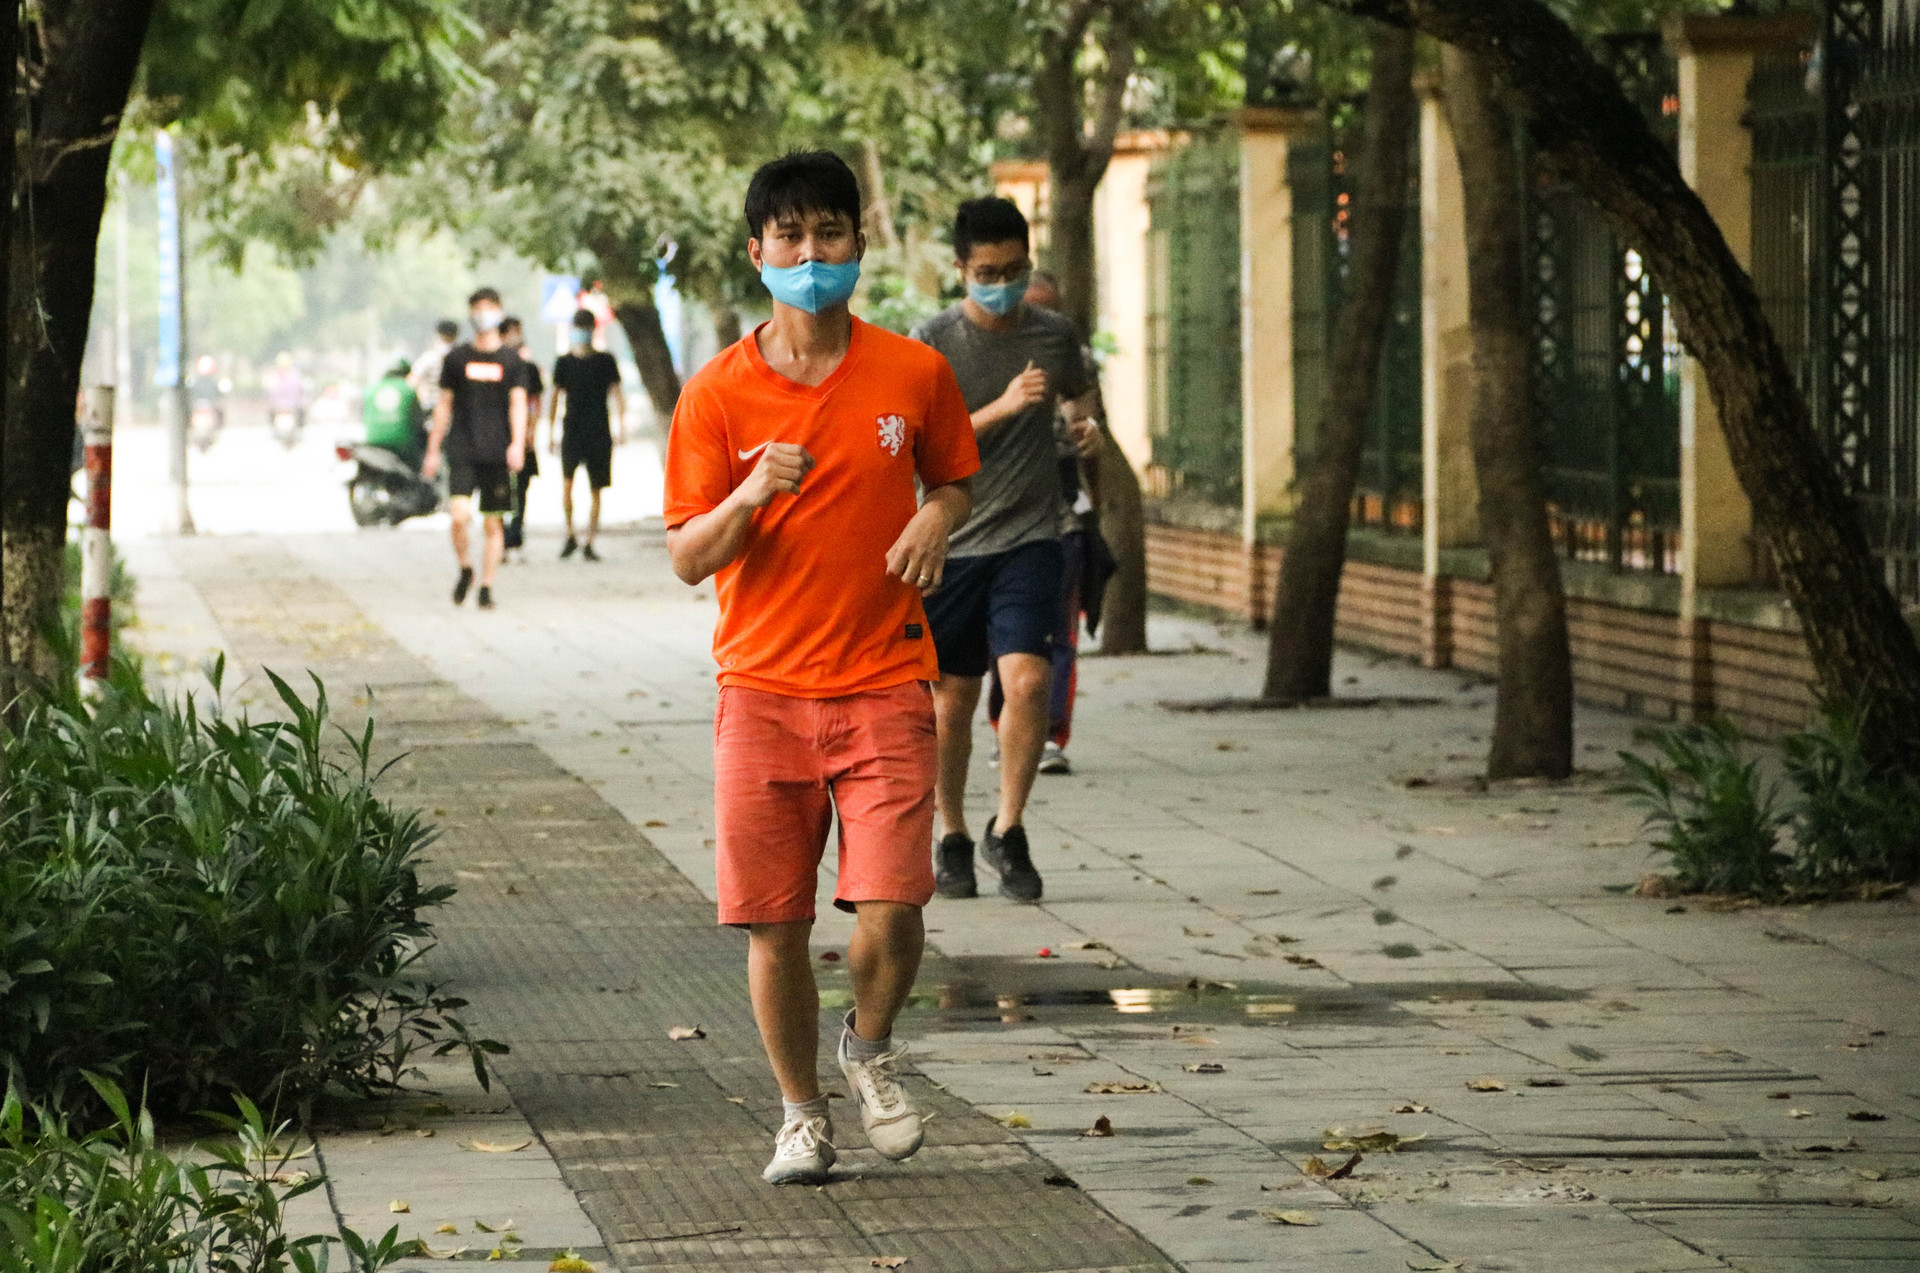 Chùm ảnh: Các tụ điểm công cộng tại Hà Nội dần trở nên đông đúc sau một tuần thực hiện cách ly xã hội - Ảnh 8.